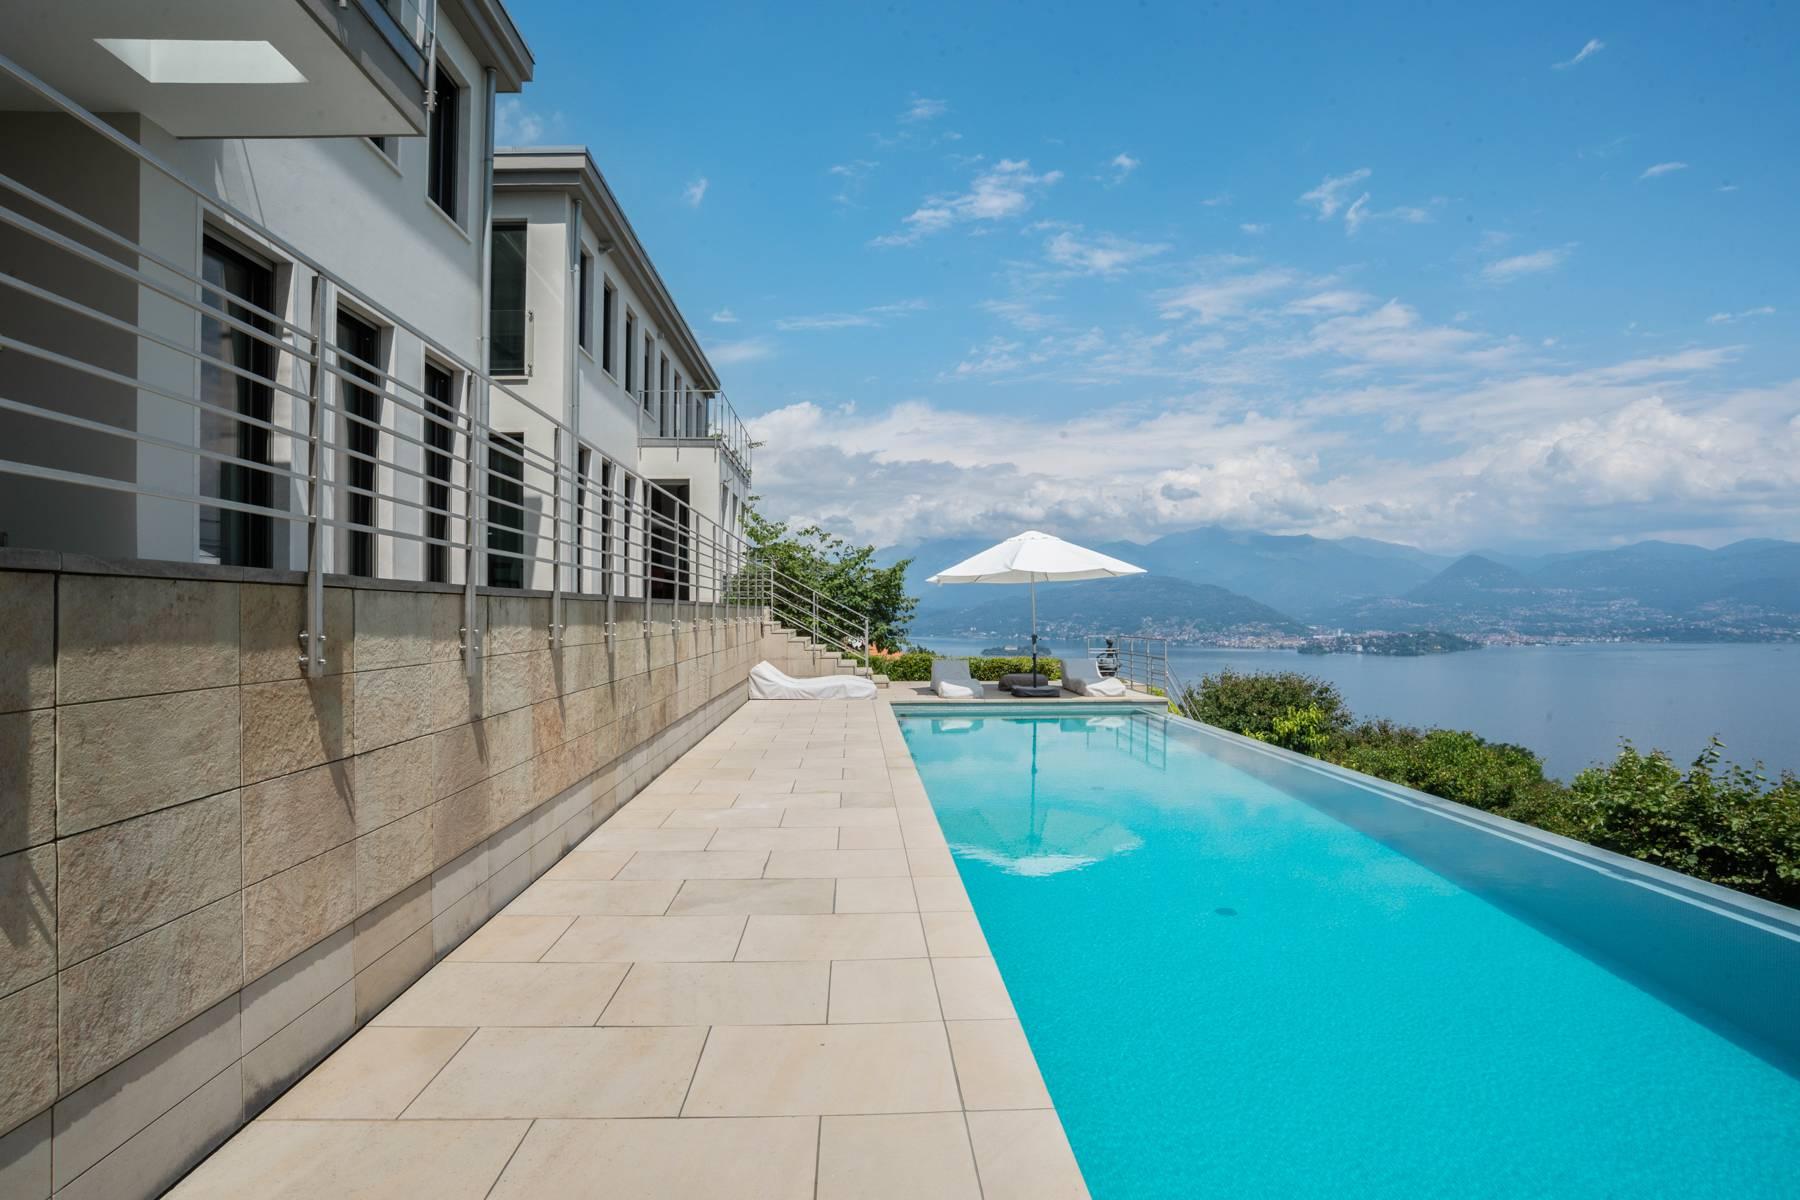 Fabulous Villa on the hills of Stresa - 2